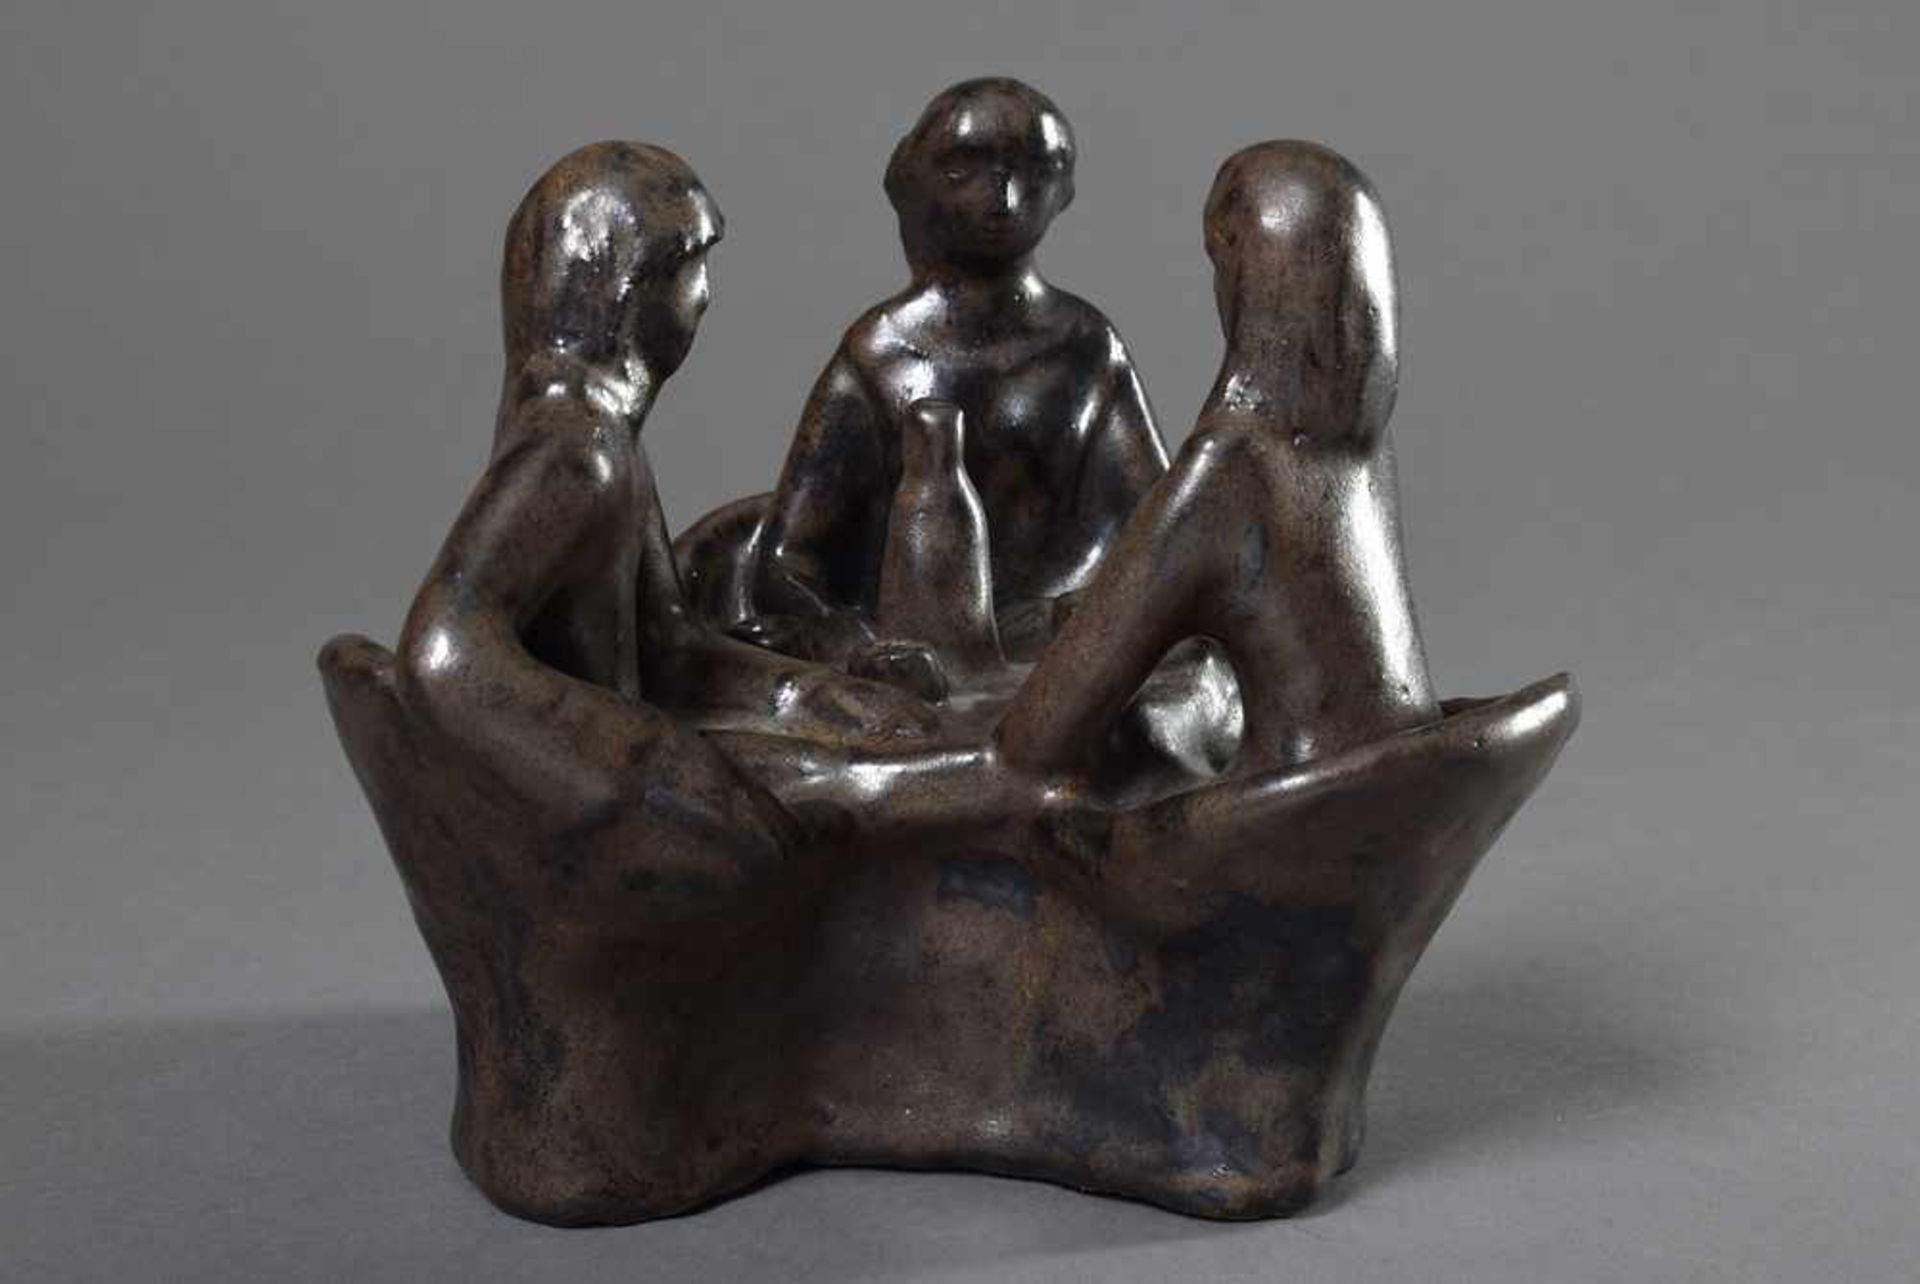 Maetzel, Monika (1917-2010) "Drei Personen am Tisch" 1979, Keramik dunkelbraun glasiert, im Boden